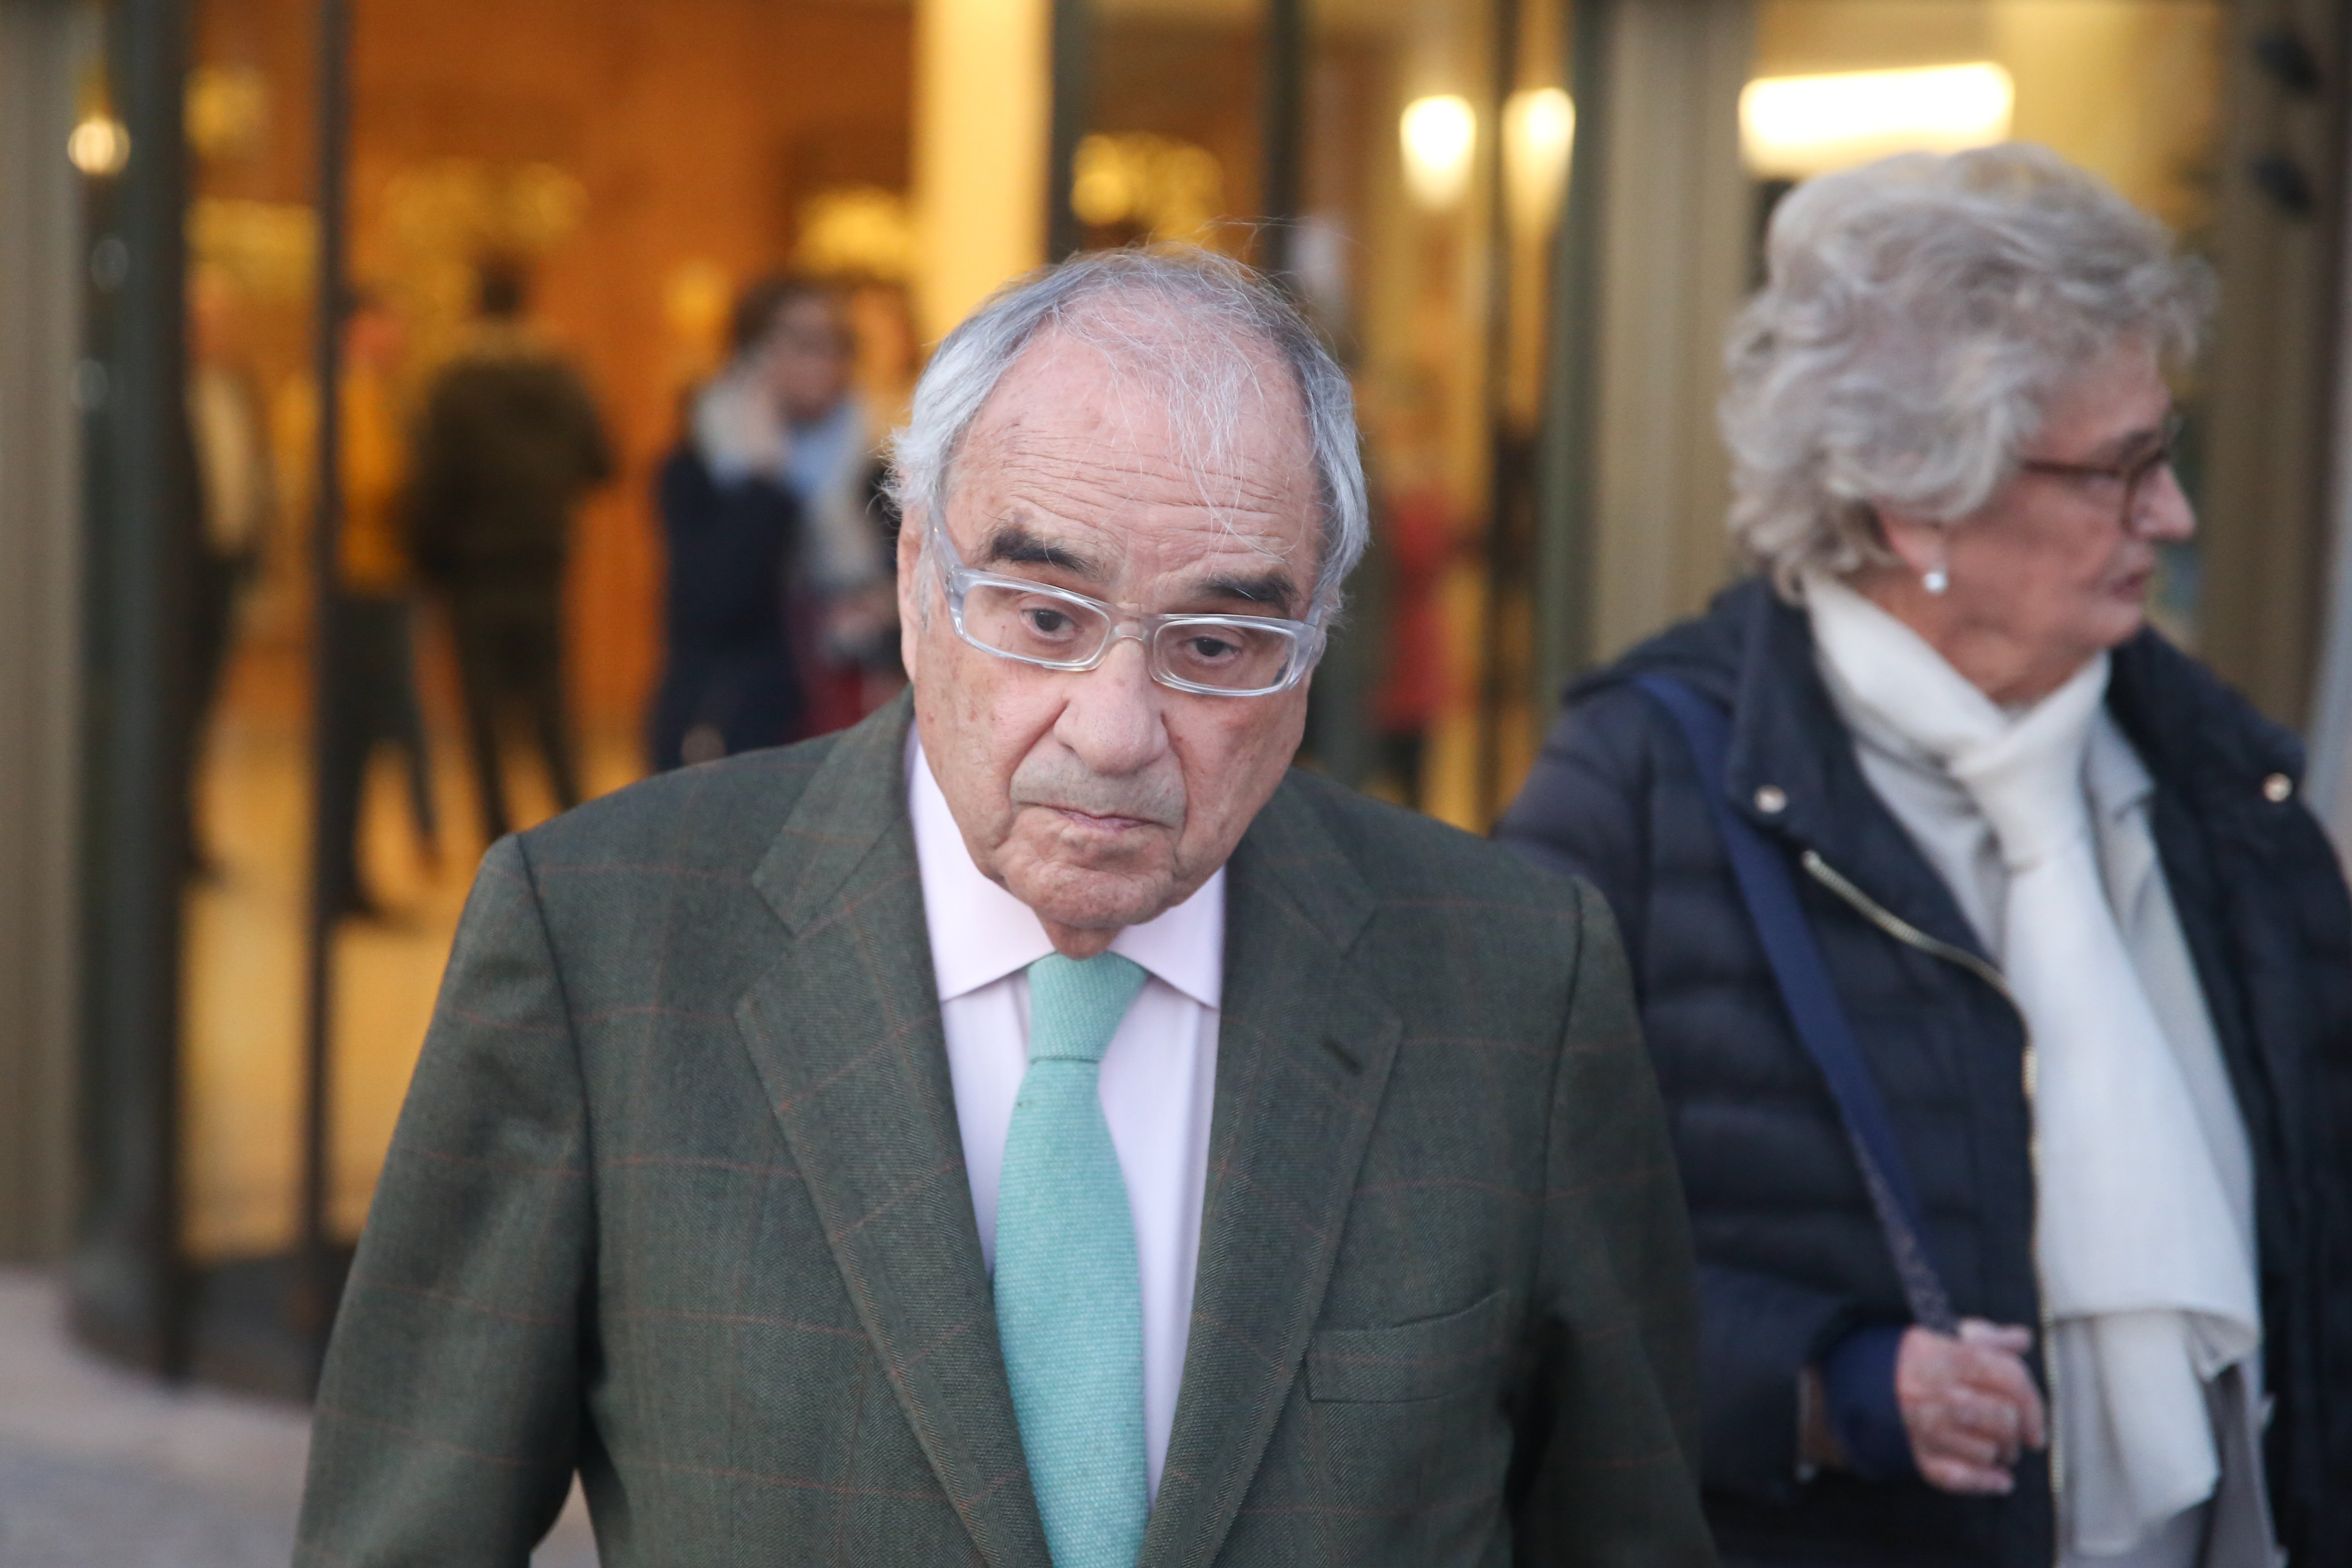 Martín Villa recorrerà el procés pels crims del franquisme: "Estic tranquil"